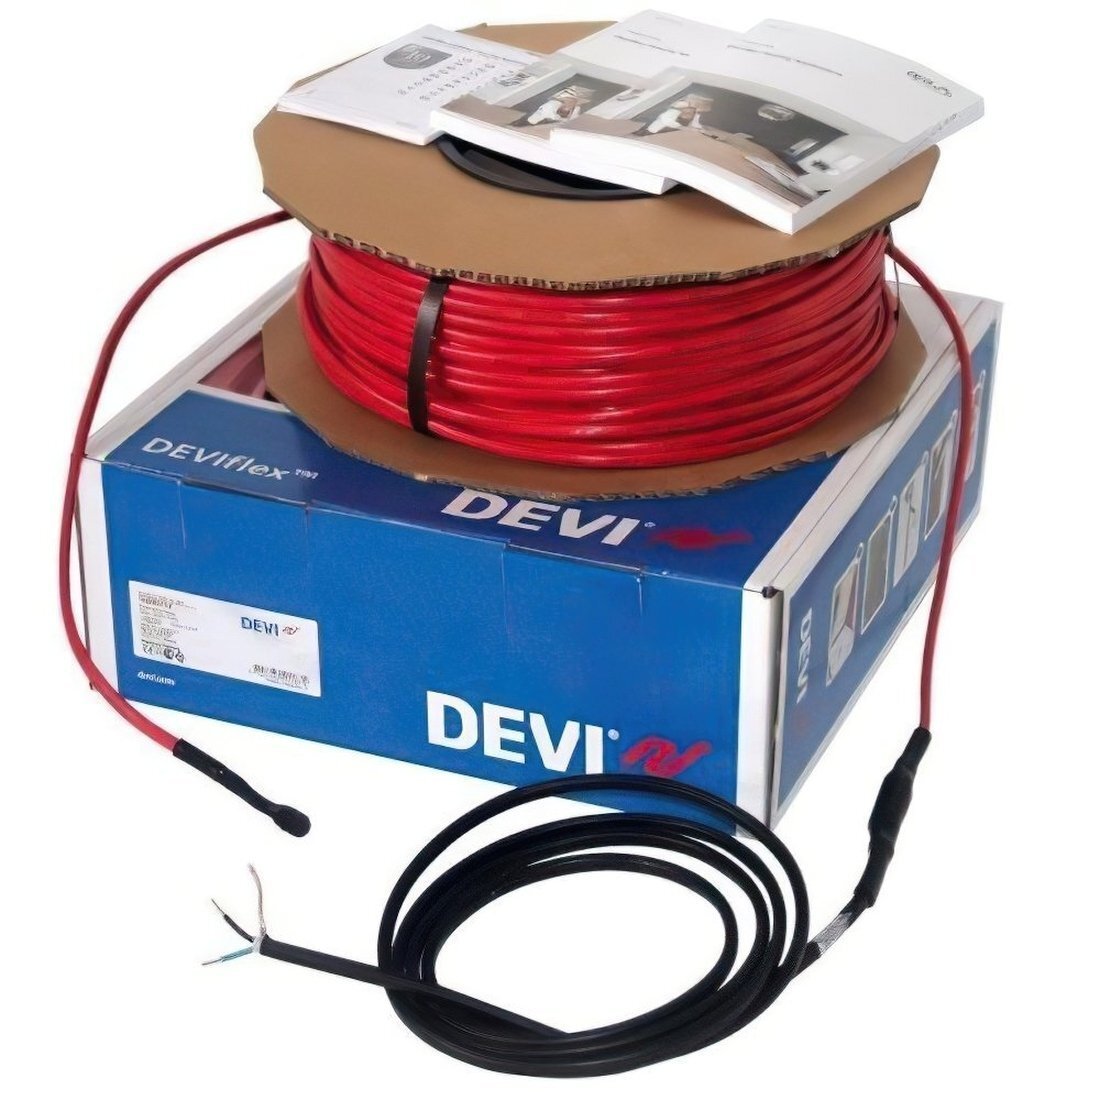 Теплый пол DEVI Flex двухжильный нагревательный кабель 18T, 935 Вт, 230V, 52 м (140F1243) фото 1